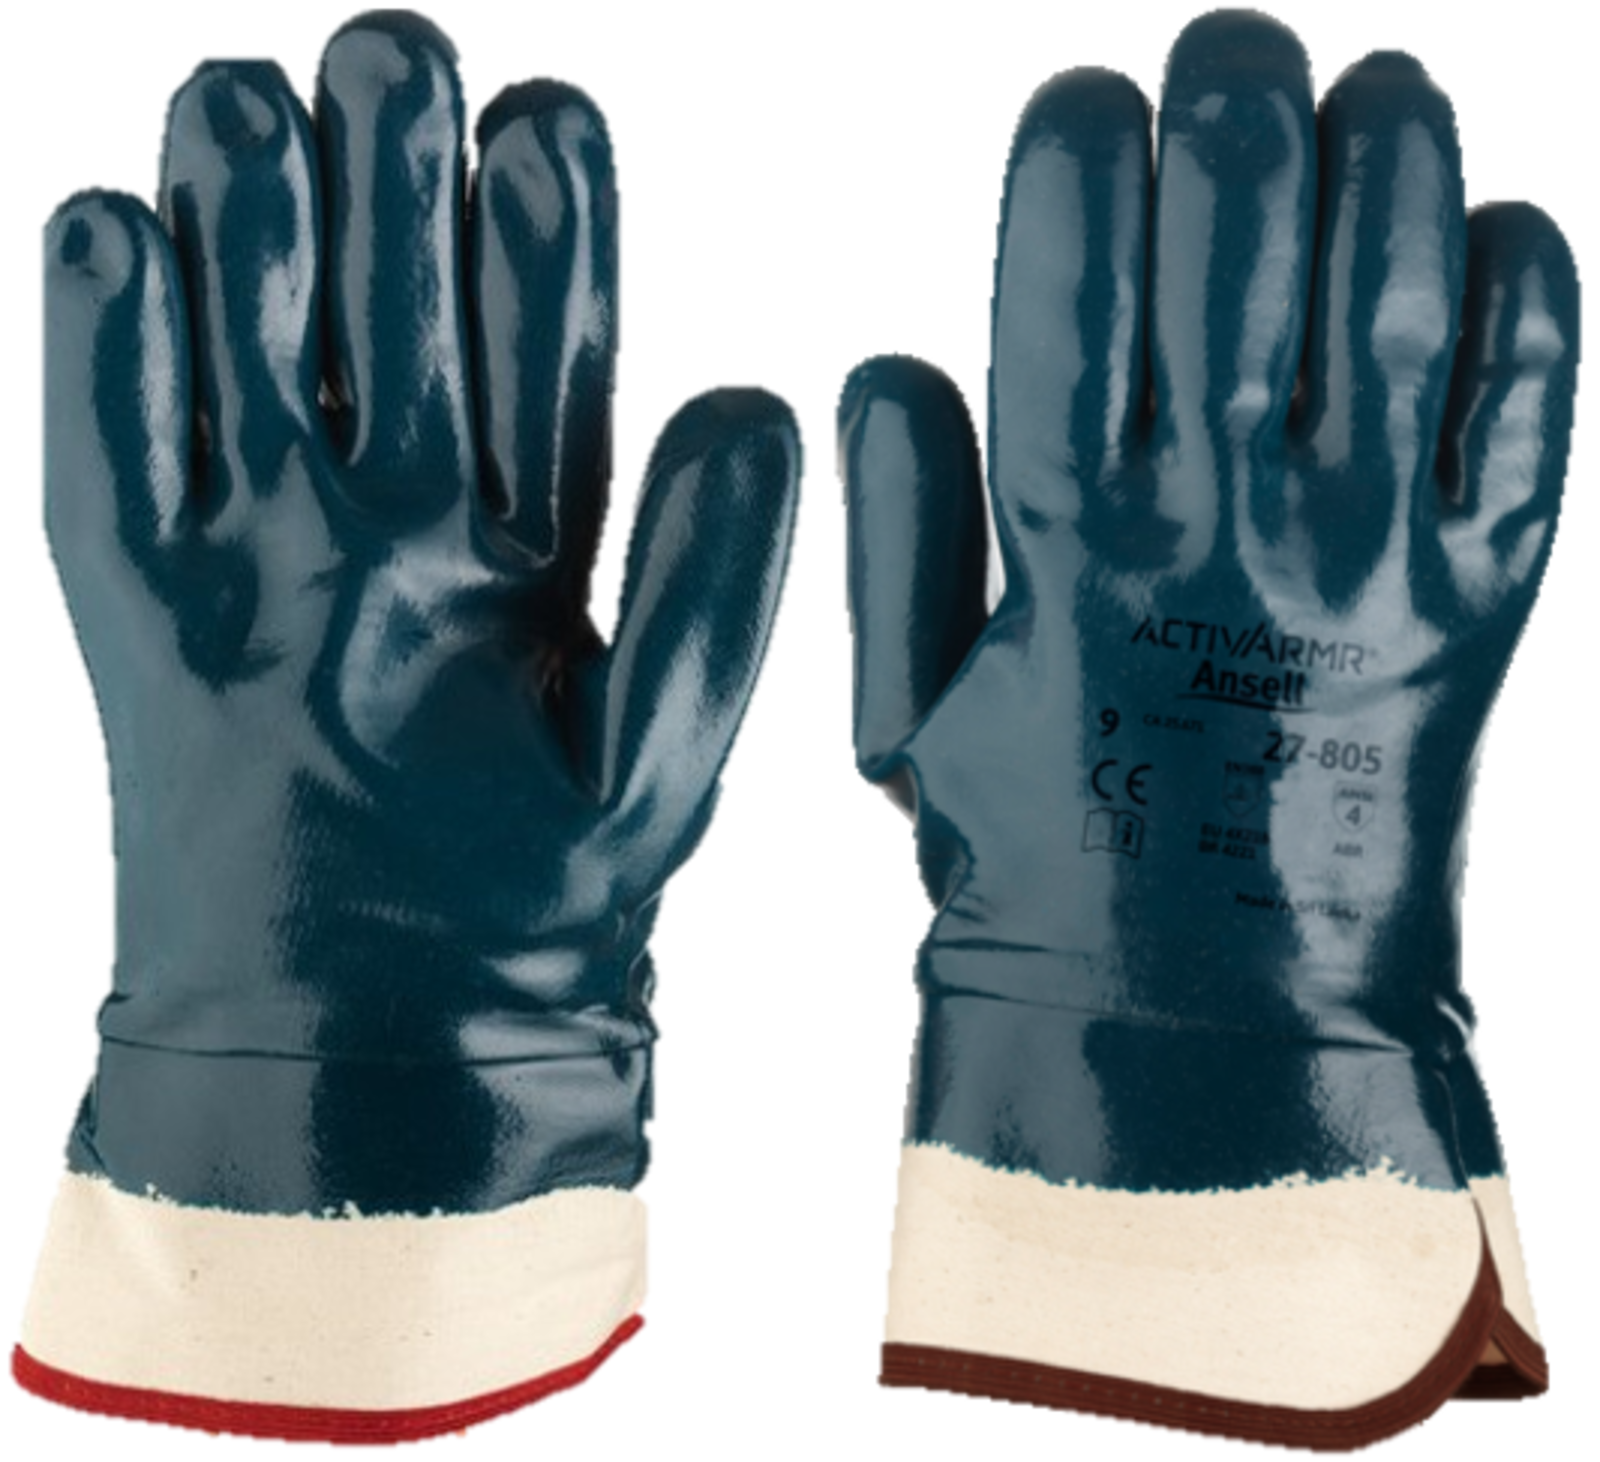 Polomáčané rukavice Ansell 27-805 Hycron  - veľkosť: 11/XXL